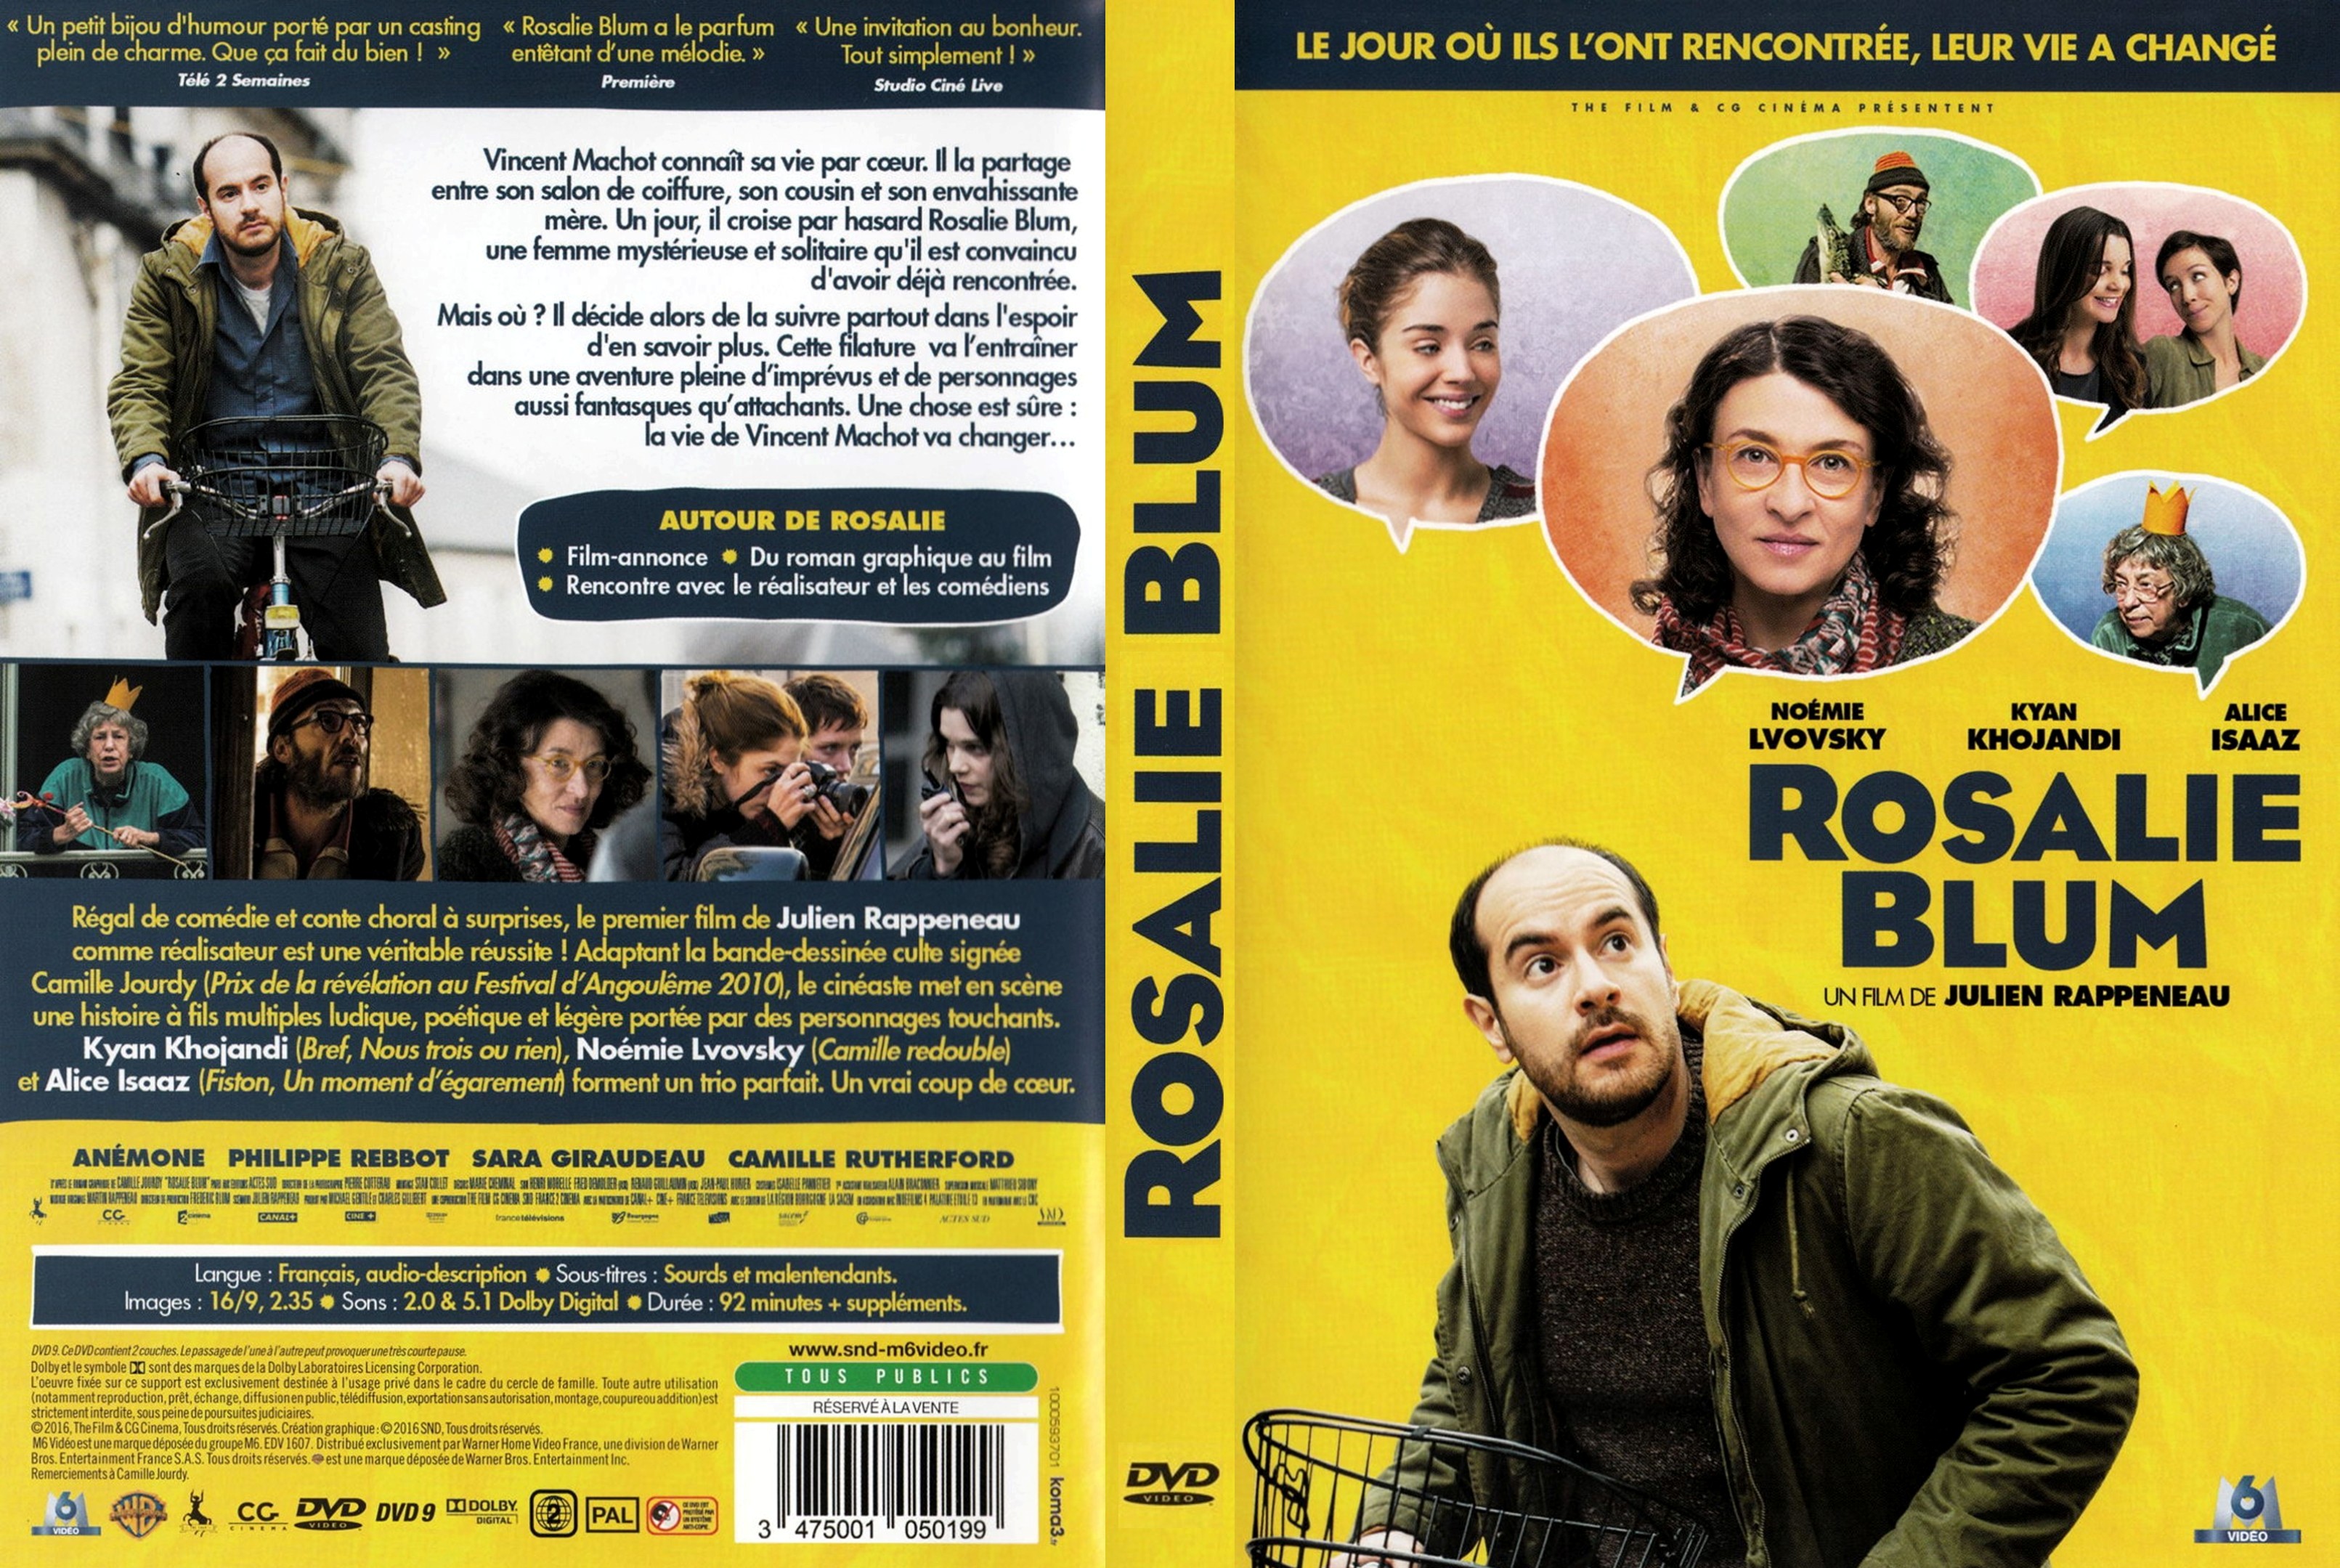 Jaquette DVD Rosalie Blum custom